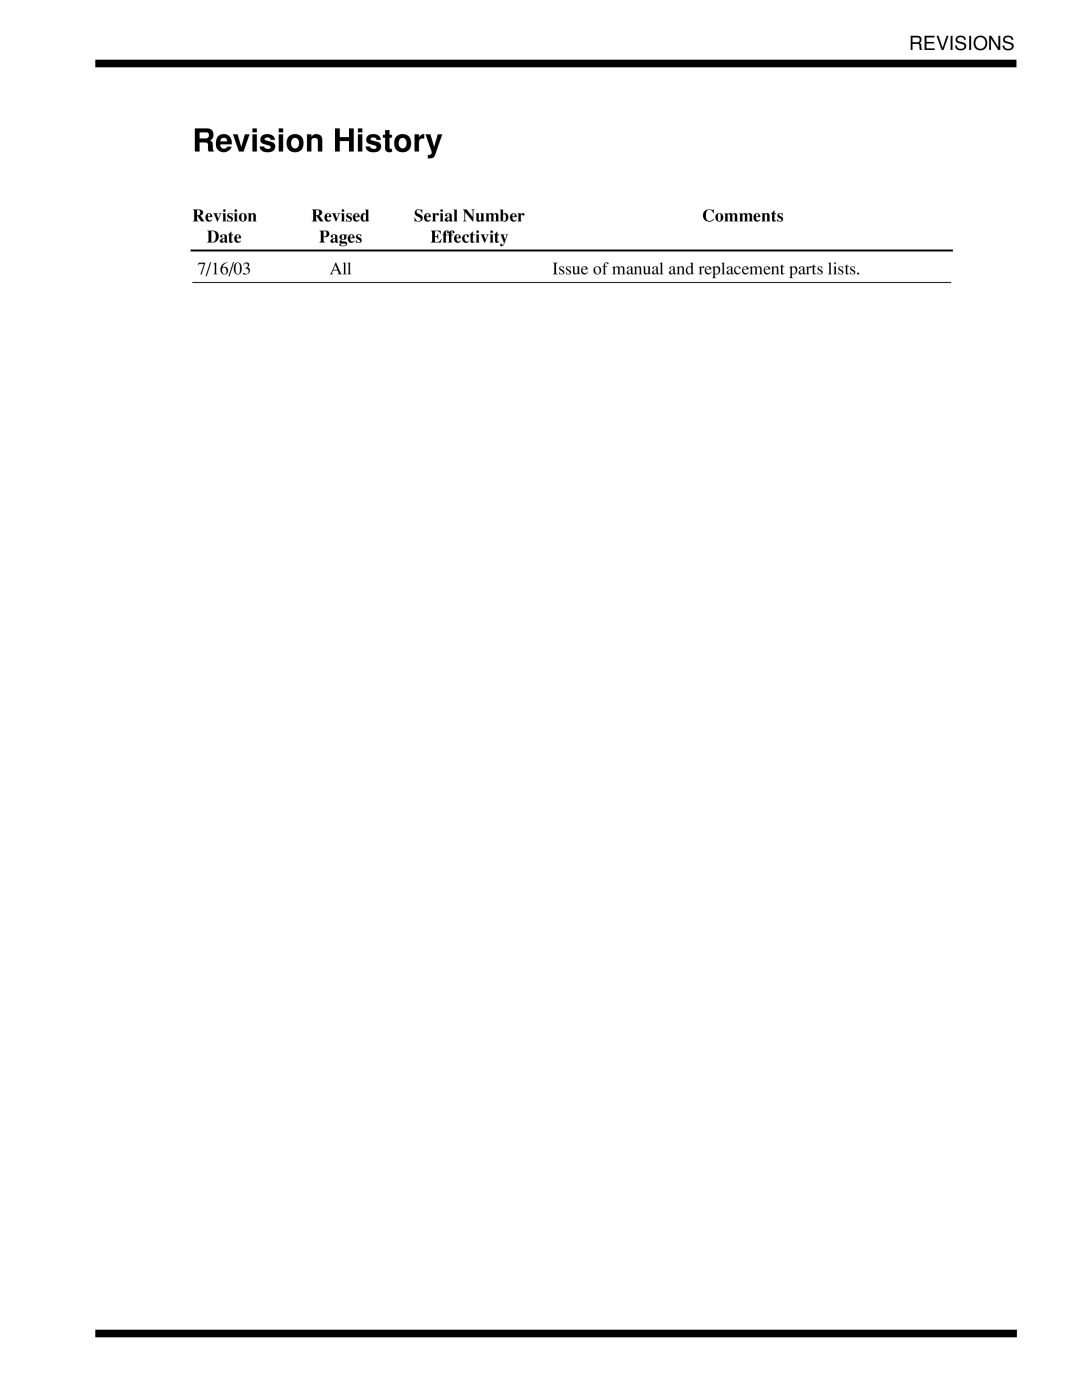 Moyer Diebel 401-HTNM2 PLUS, 401-LTM2 PLUS, 401-HTM2 PLUS technical manual Revision History, Revisions 